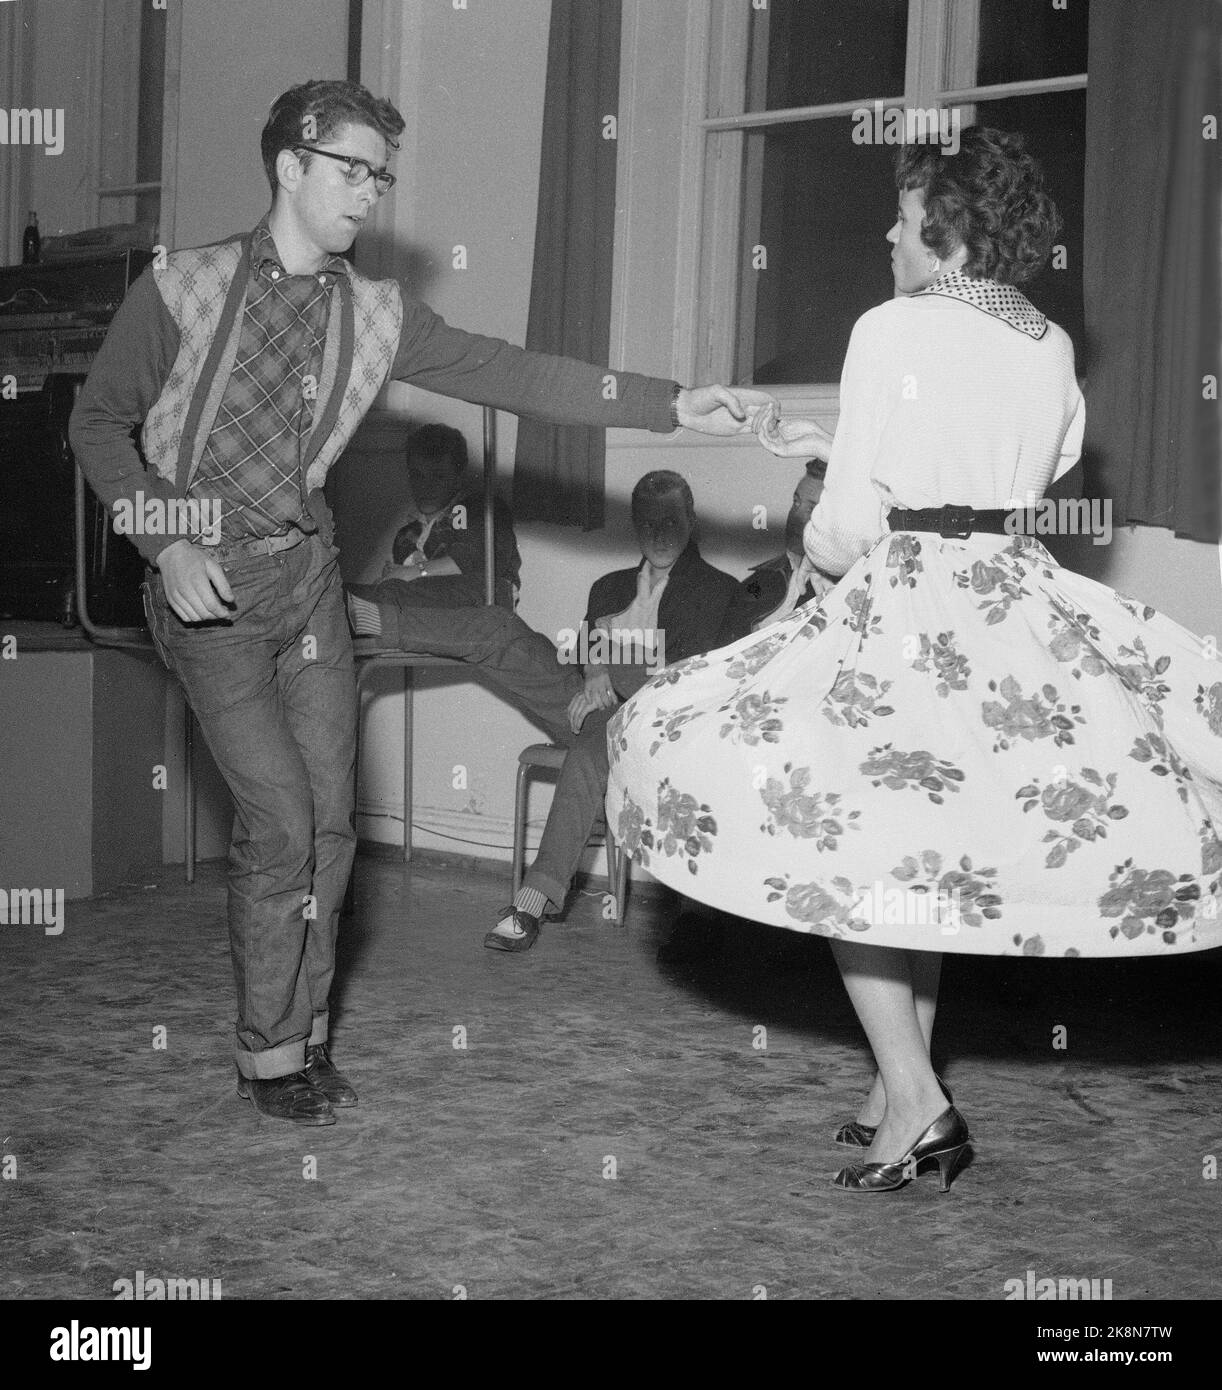 Oslo 19570905: Rock'n roll avec danse au club de loisirs de Hammersborg. Balançoire et rock dansant pour les jeunes dans des vêtements typiques. Photo: NTB / NTB Banque D'Images